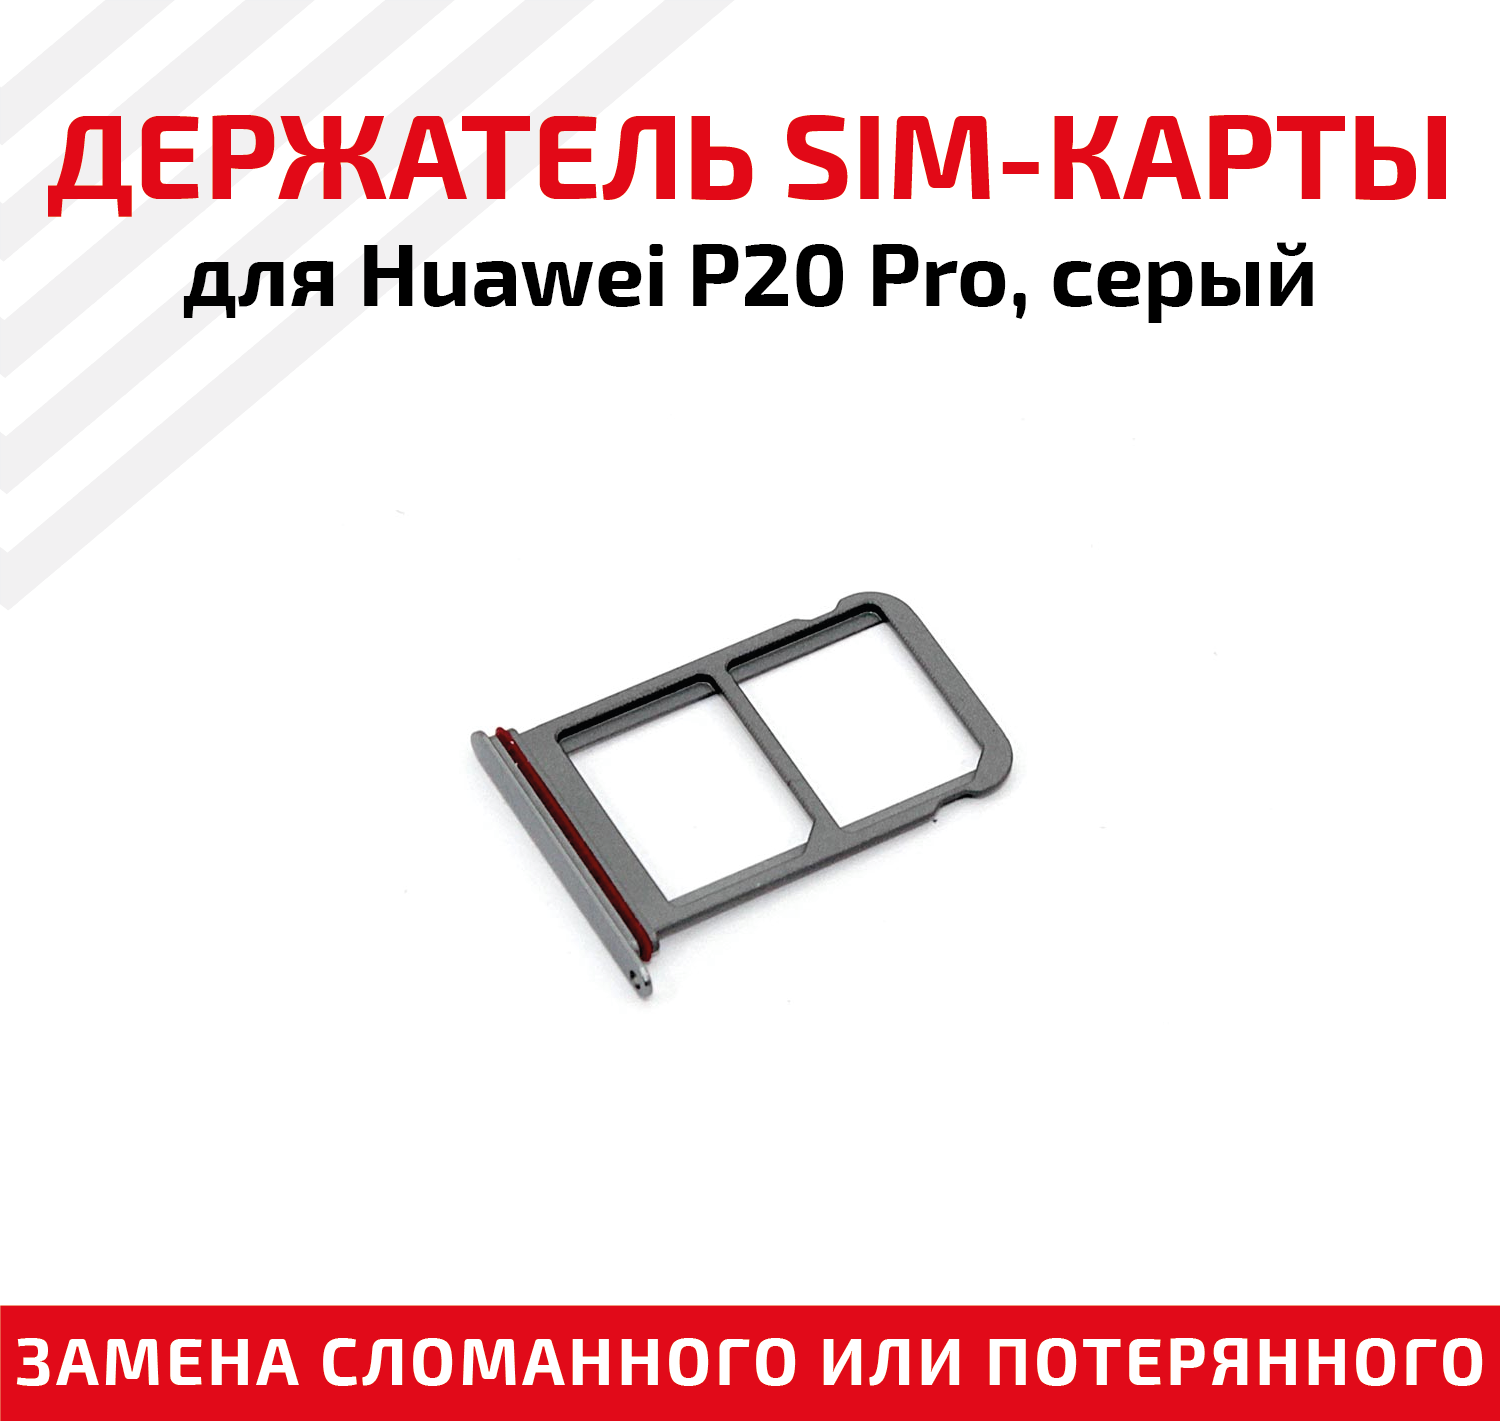 Лоток (держатель, контейнер, слот) SIM-карты для мобильного телефона (смартфона) Huawei P20 Pro, серый